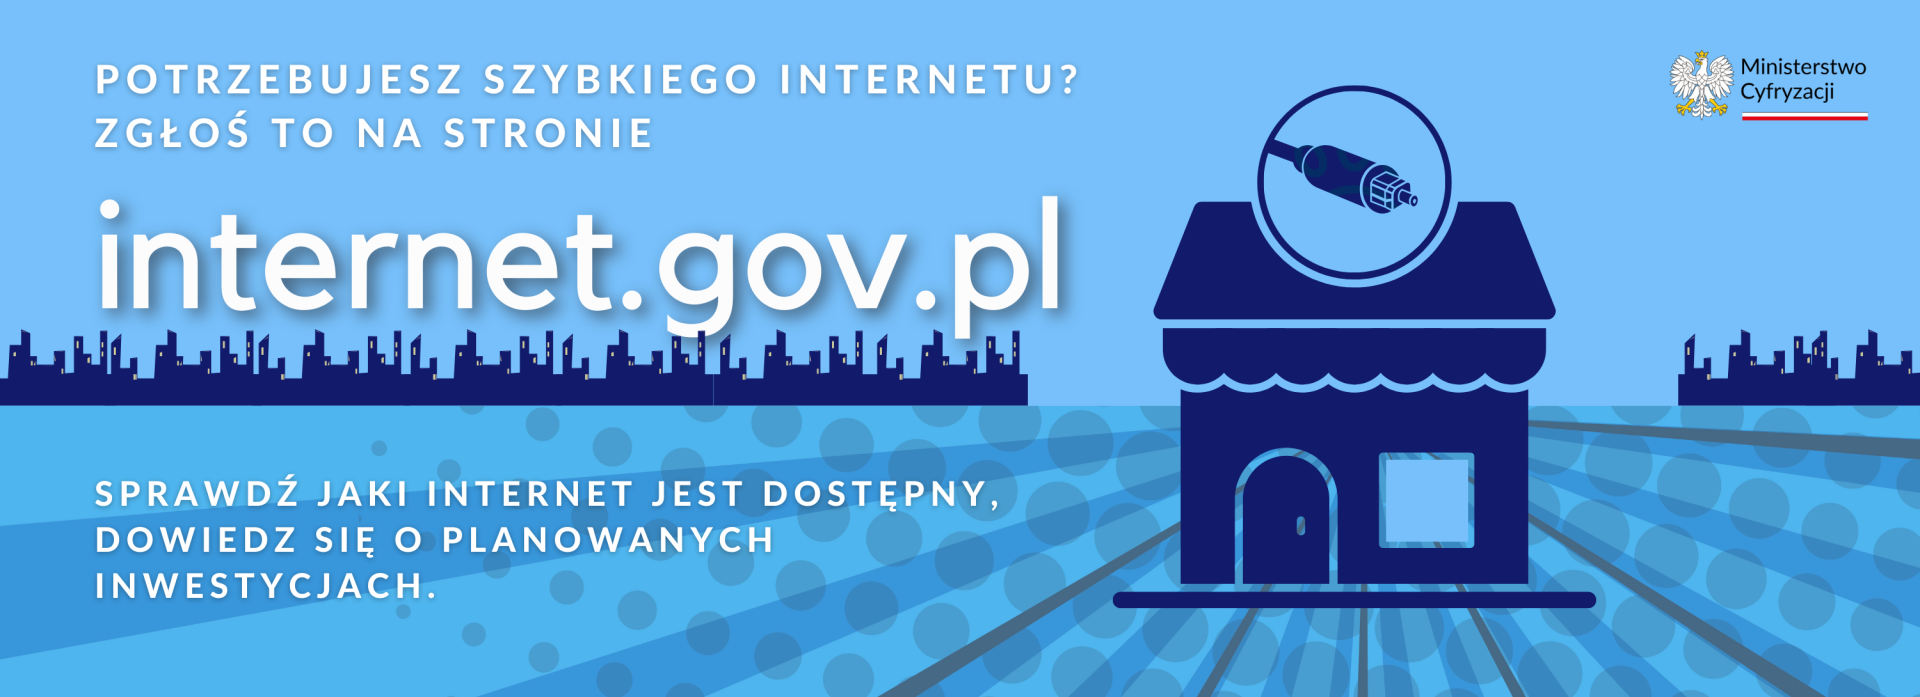 Plakat strony www.internet.gov.pl. Po prawej stronie jest domek ze znakiem łącza internetowego.